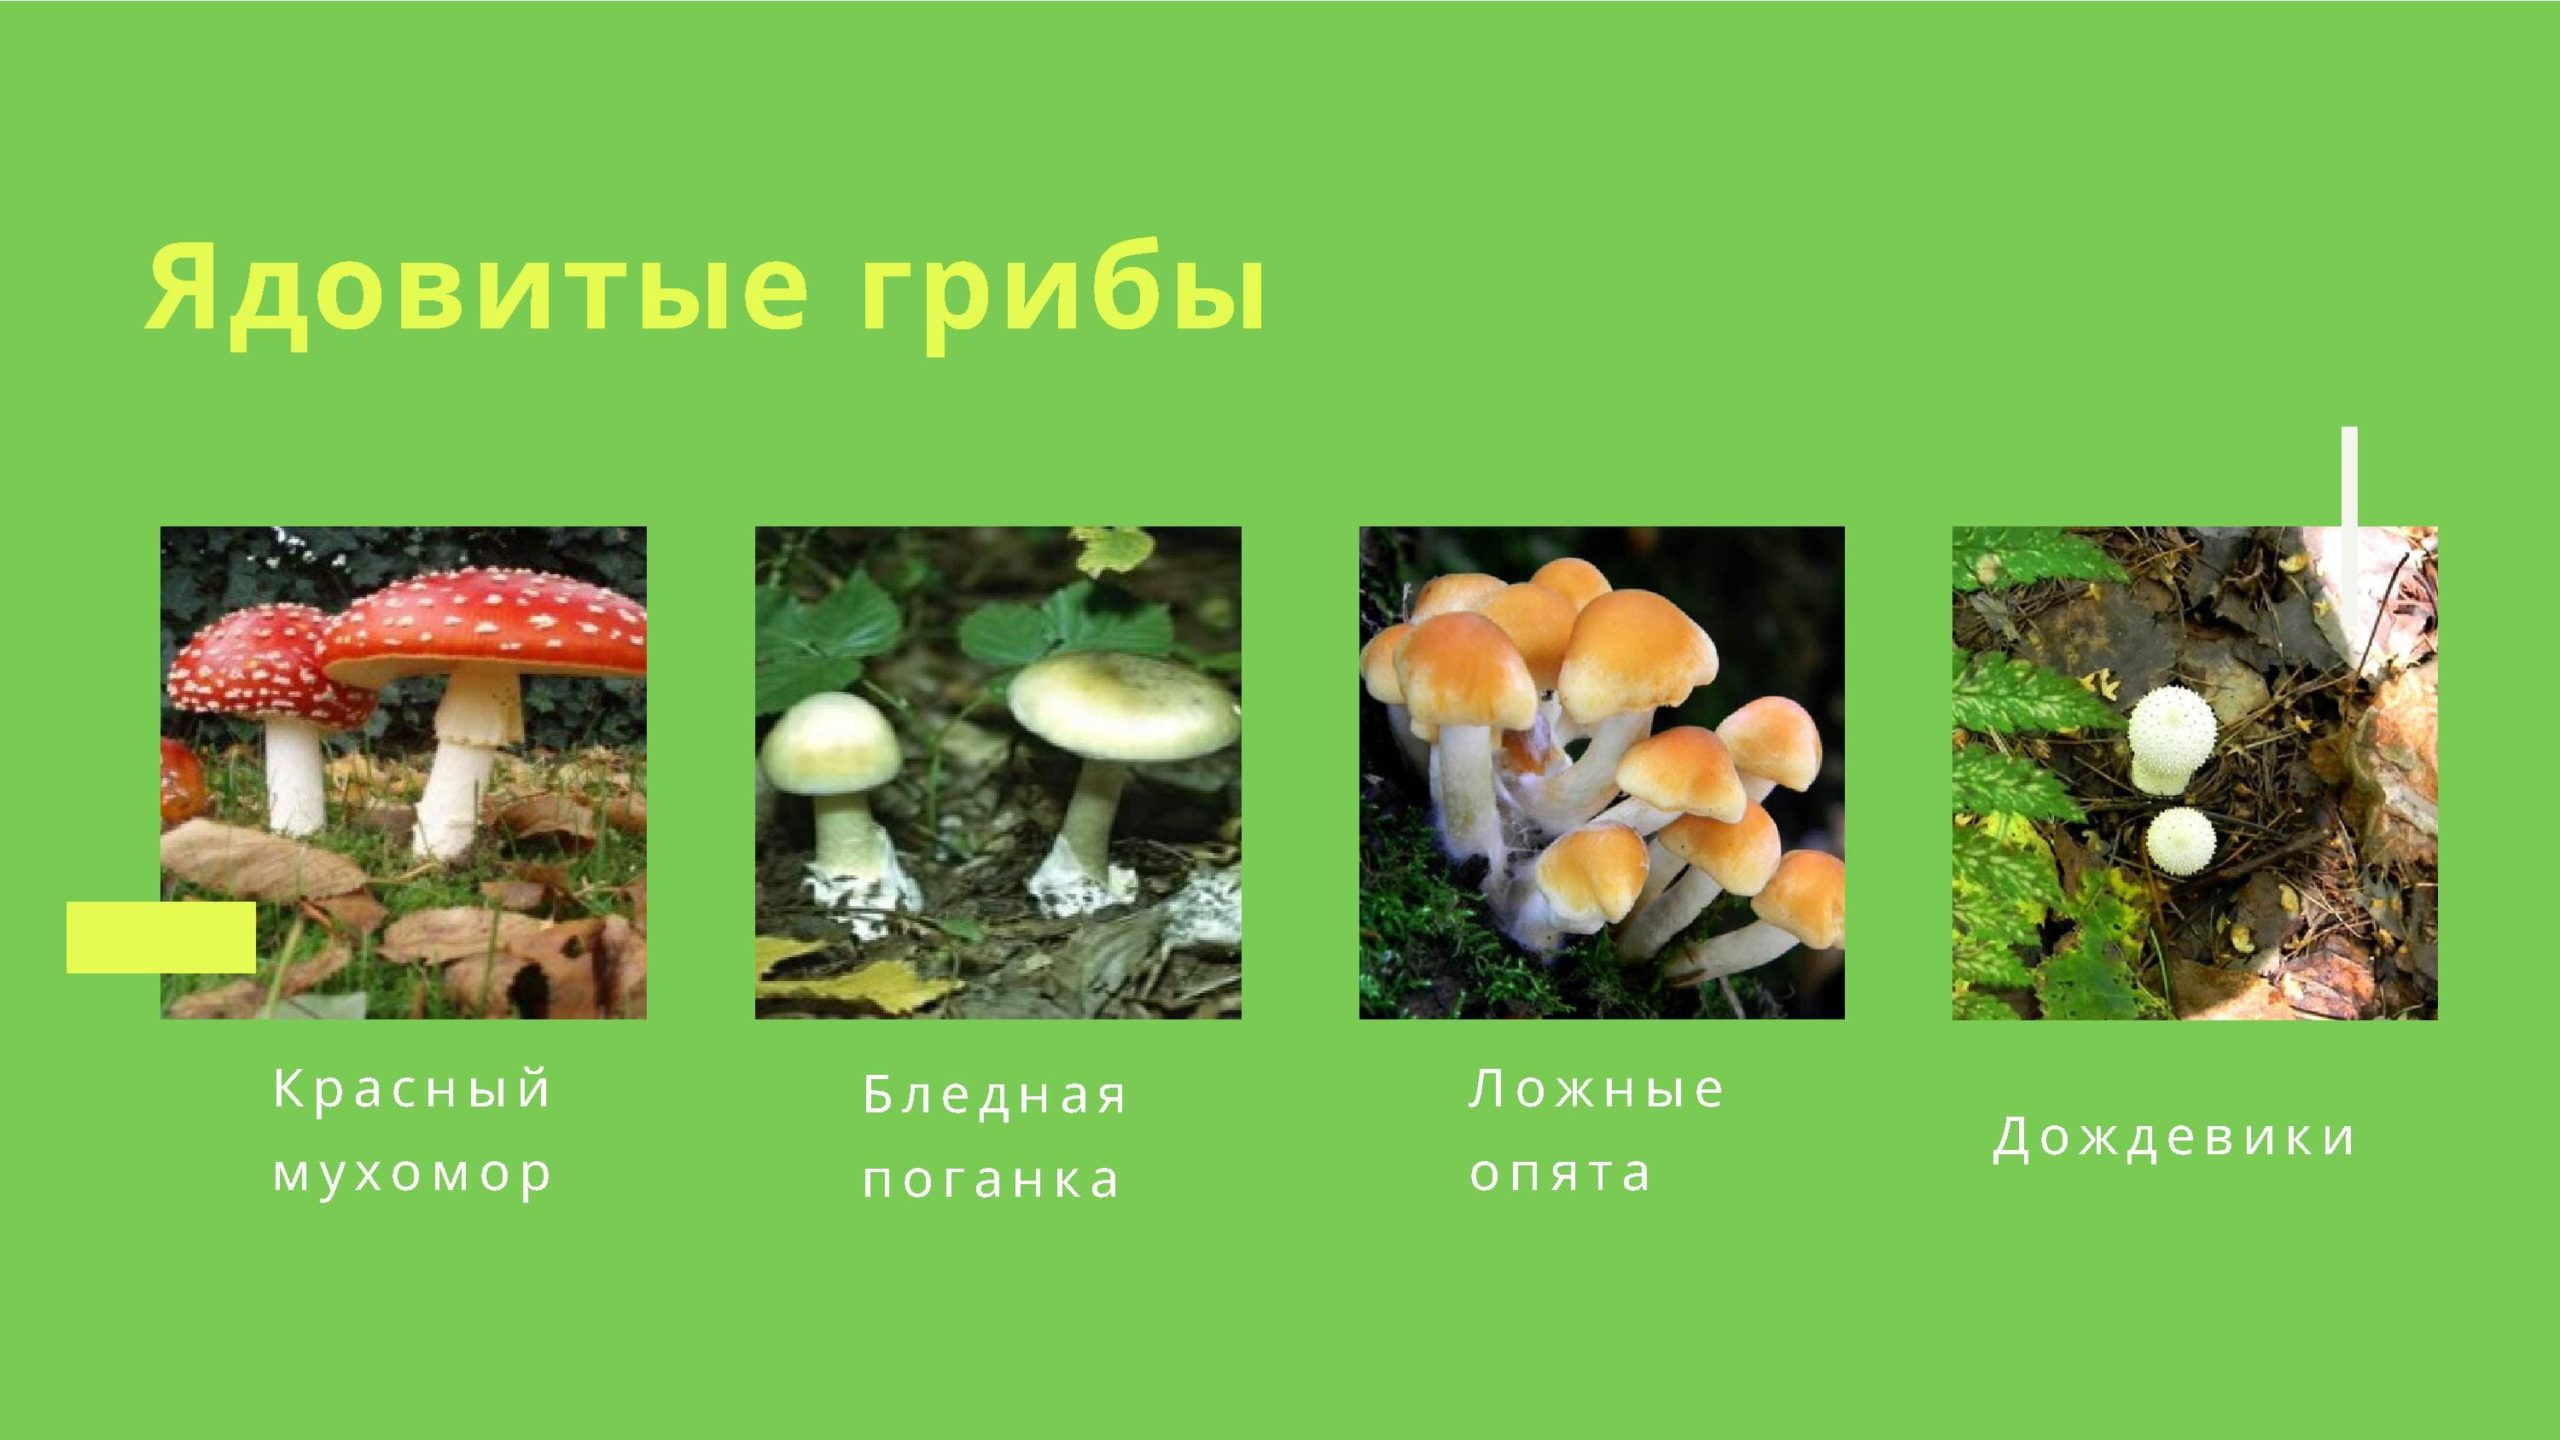 Съедобные и несъедобные грибы Пермского края